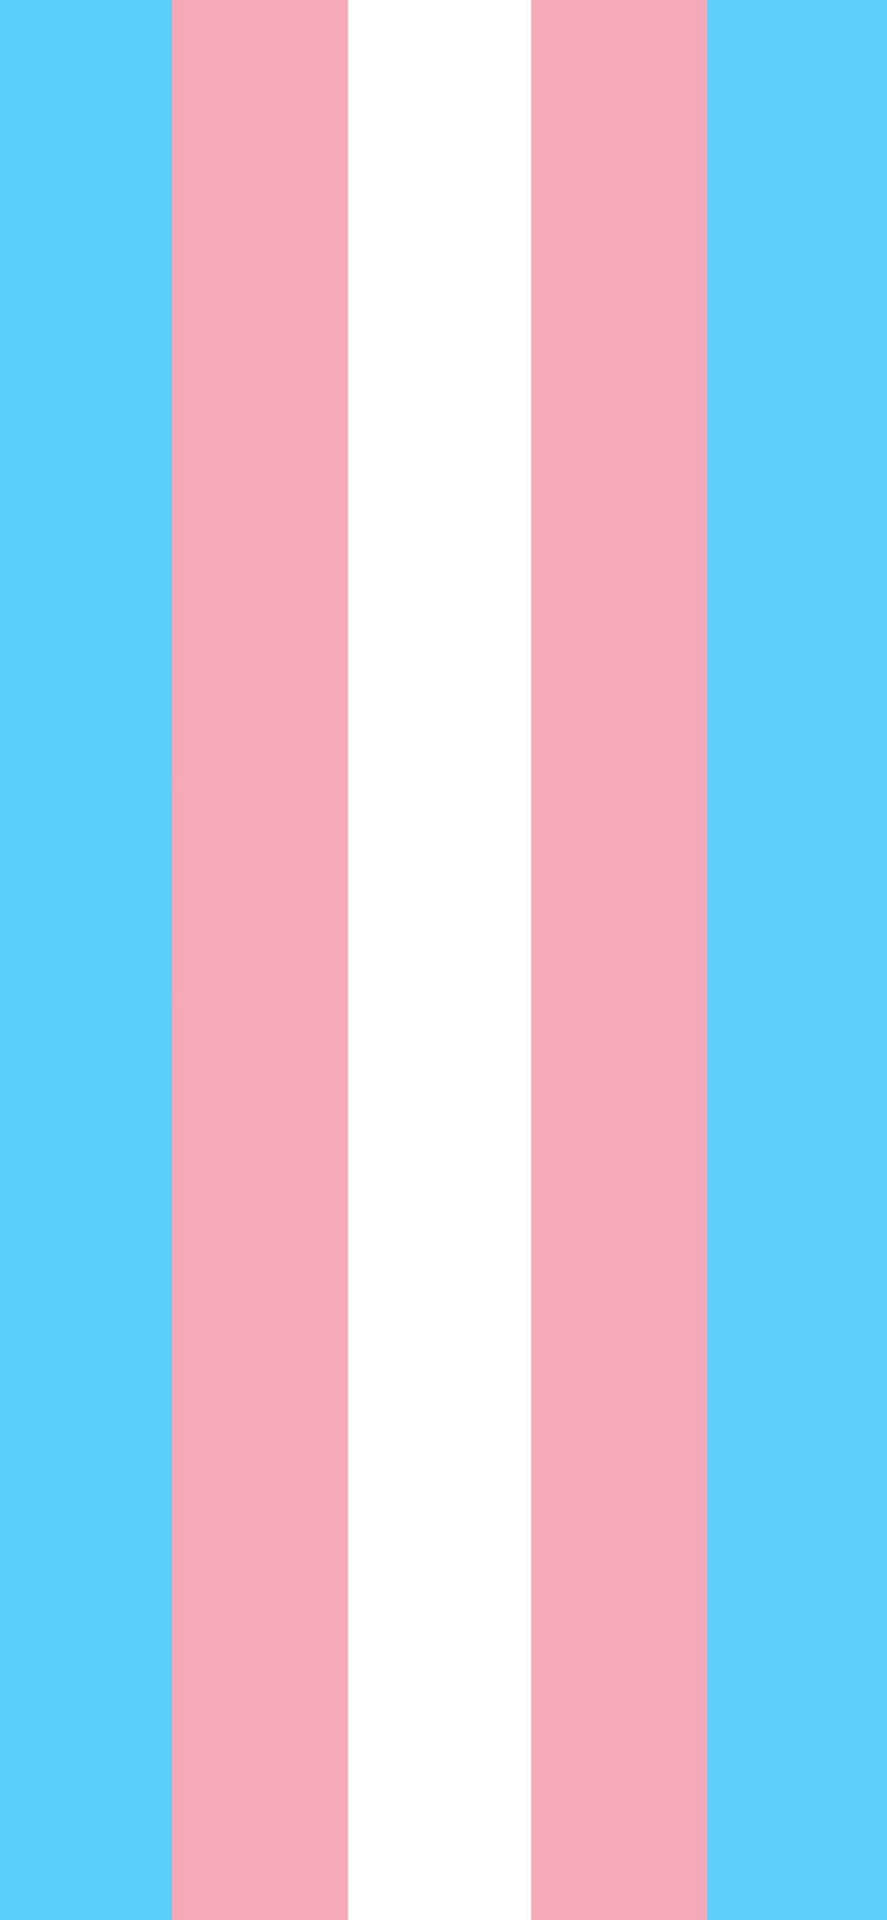 Celebrandoel Orgullo Transgénero. Fondo de pantalla